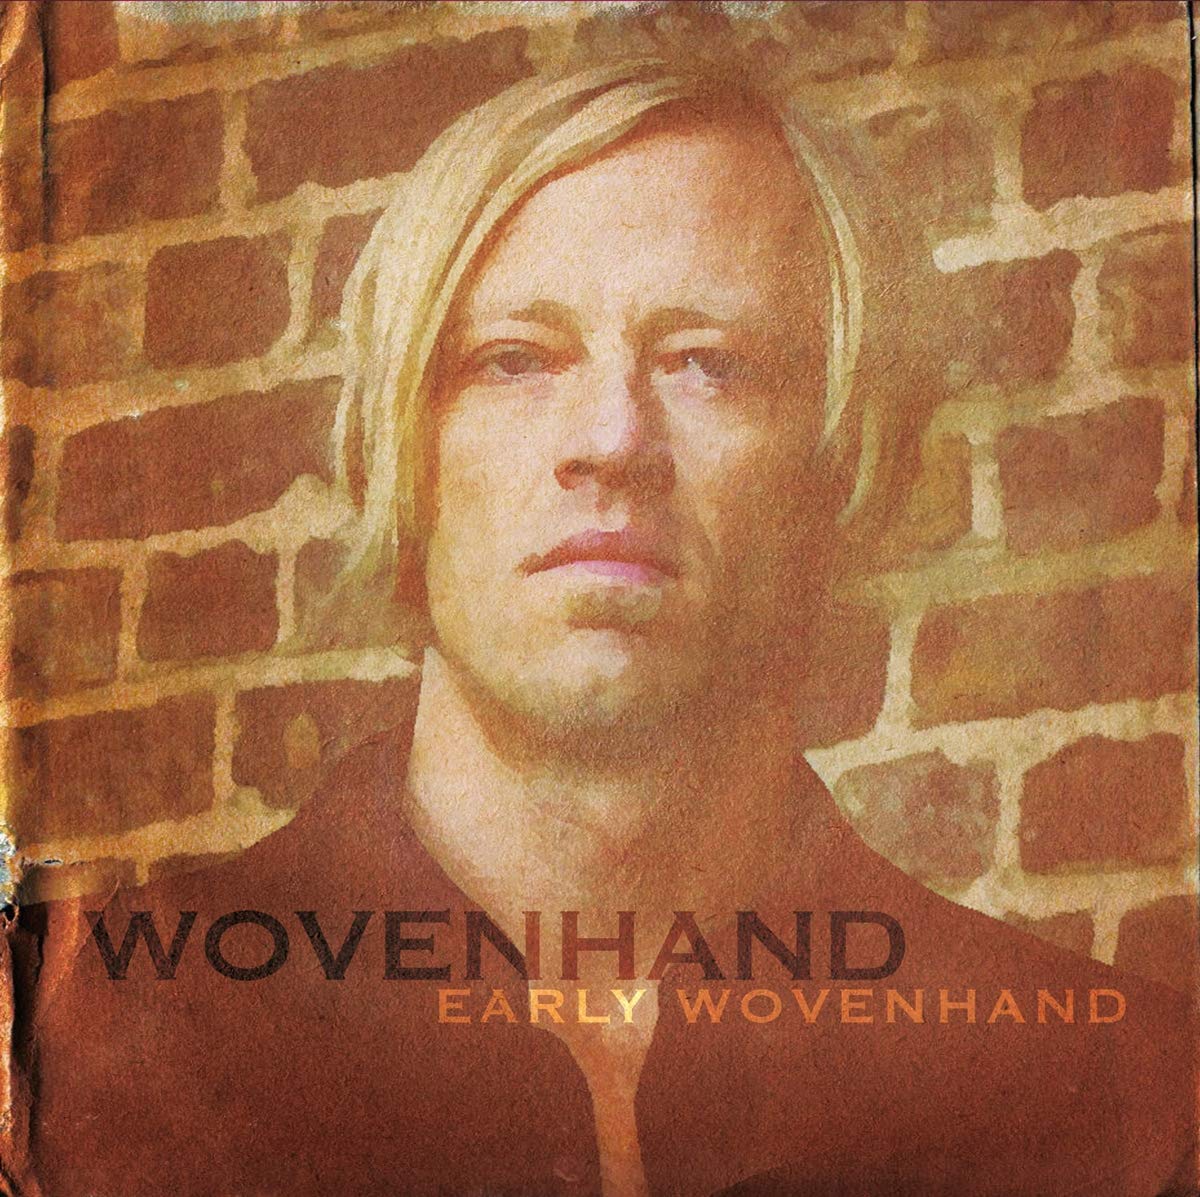 Wovenhand - Early Wovenhand | Upcoming Vinyl (January 18, 2019)